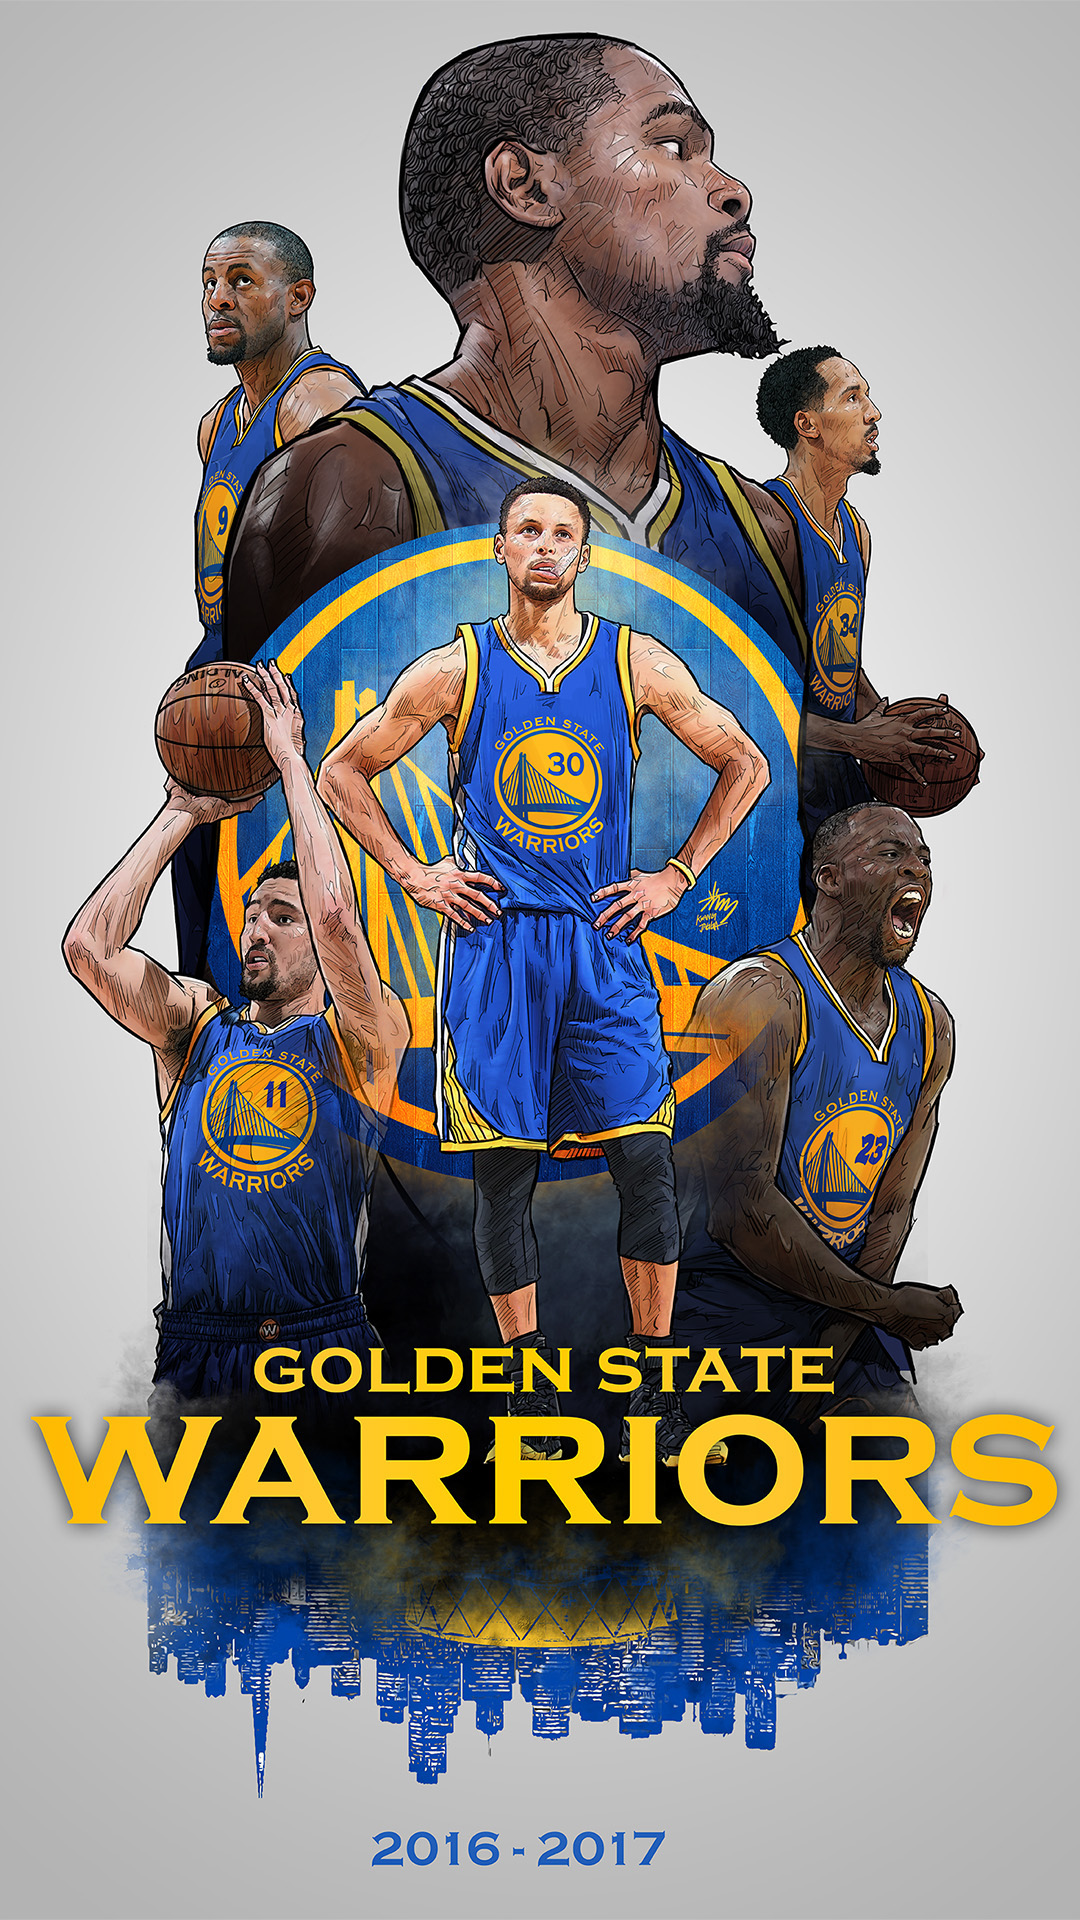 golden state warriors 2017 wallpaper,basketball player,sportswear,basketball,jersey,poster